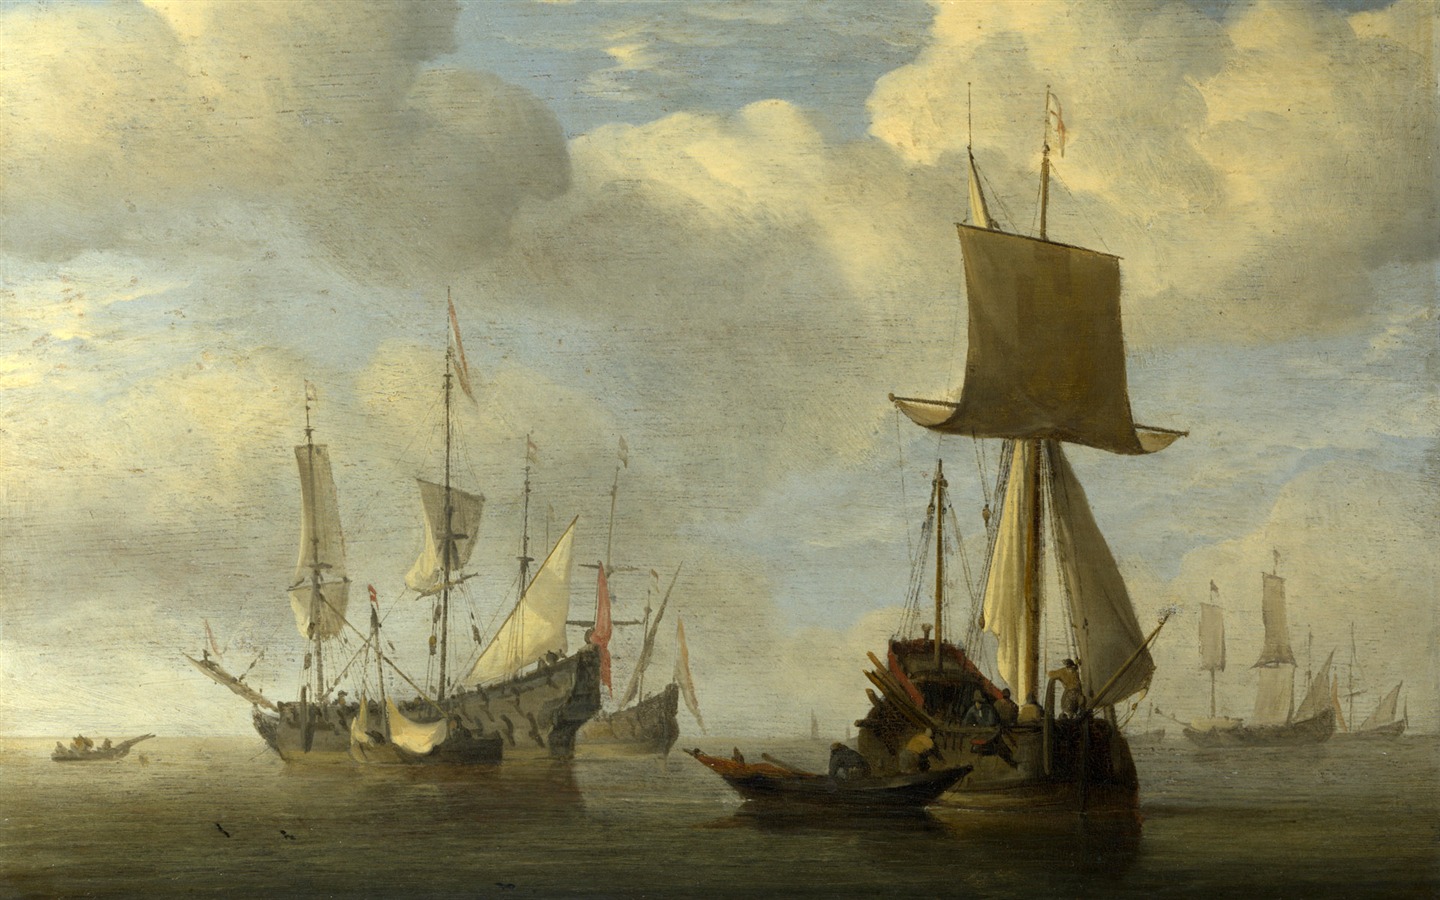 伦敦画廊帆船 壁纸(二)5 - 1440x900